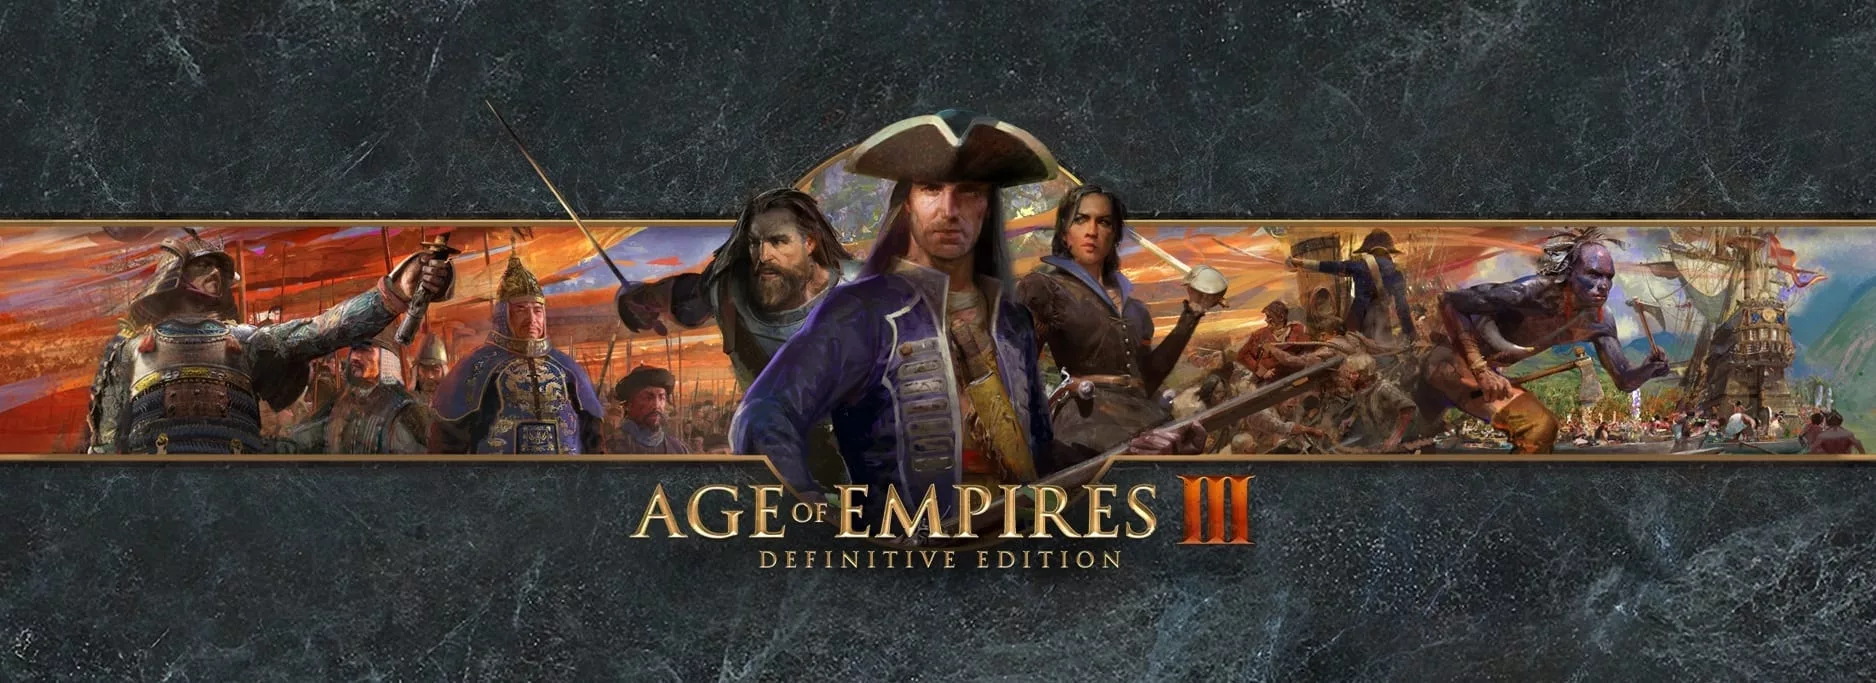 Age of Empires III: Definitive Edition, постер № 1